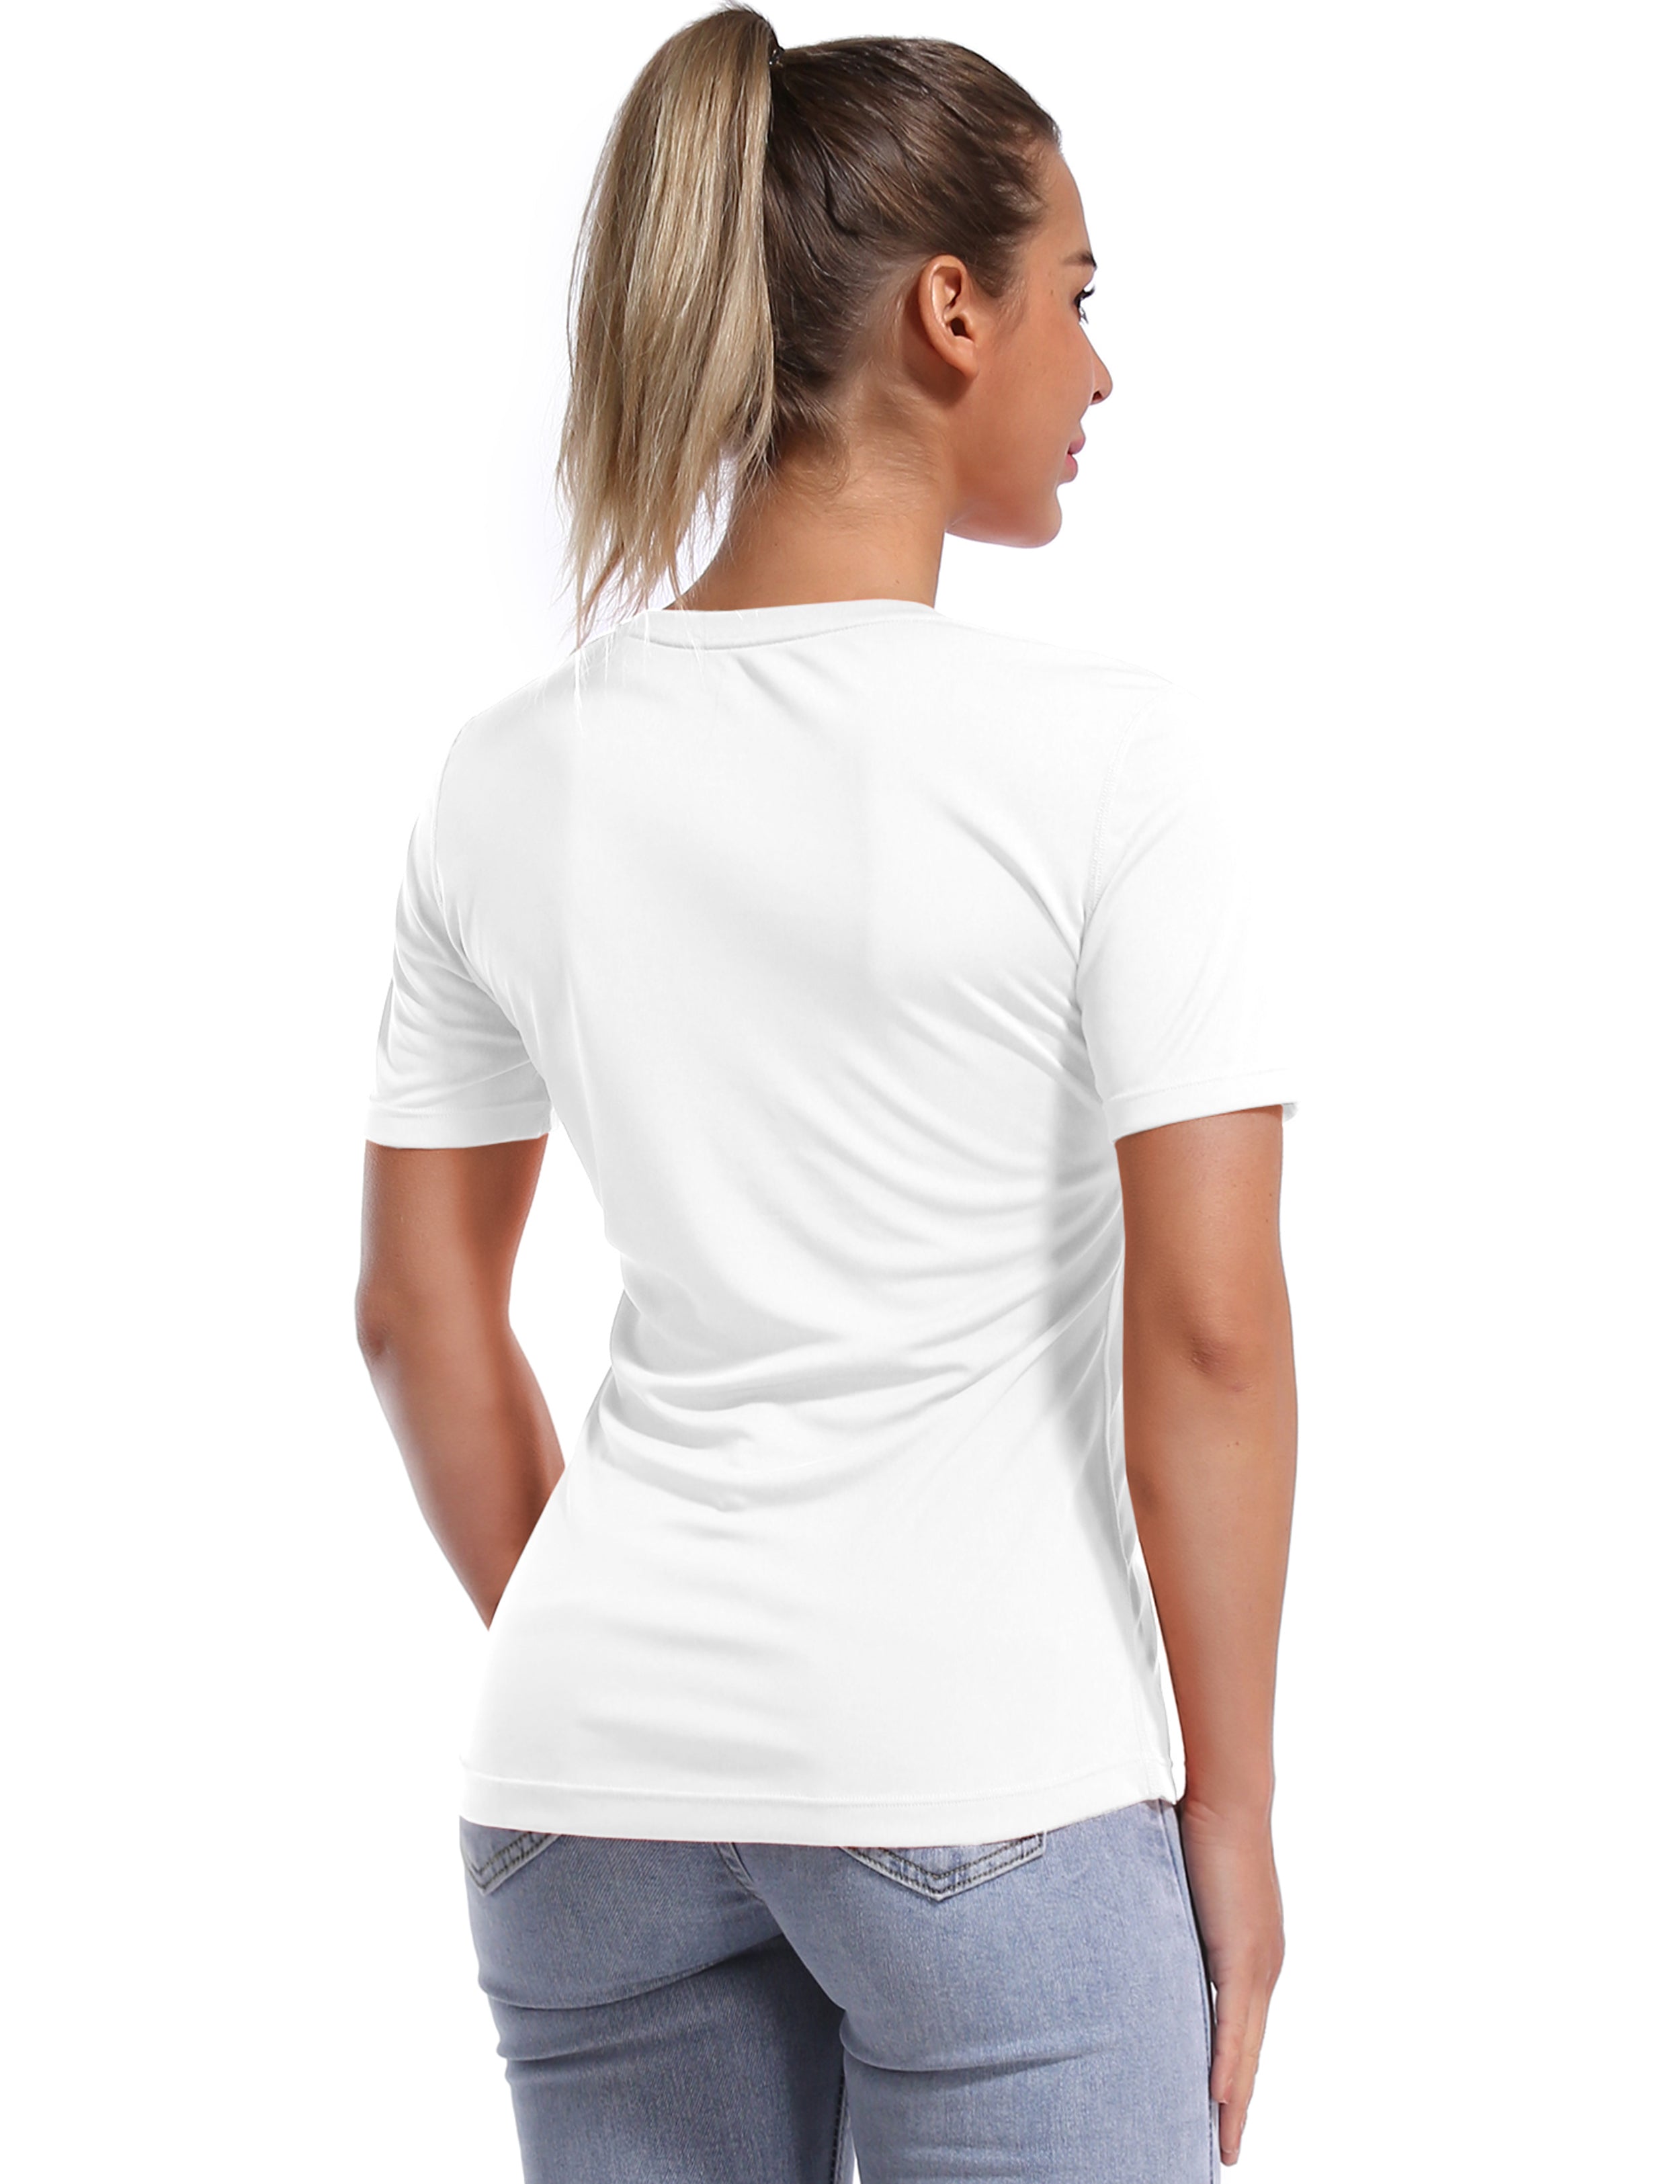 Short Sleeve Athletic Shirts white